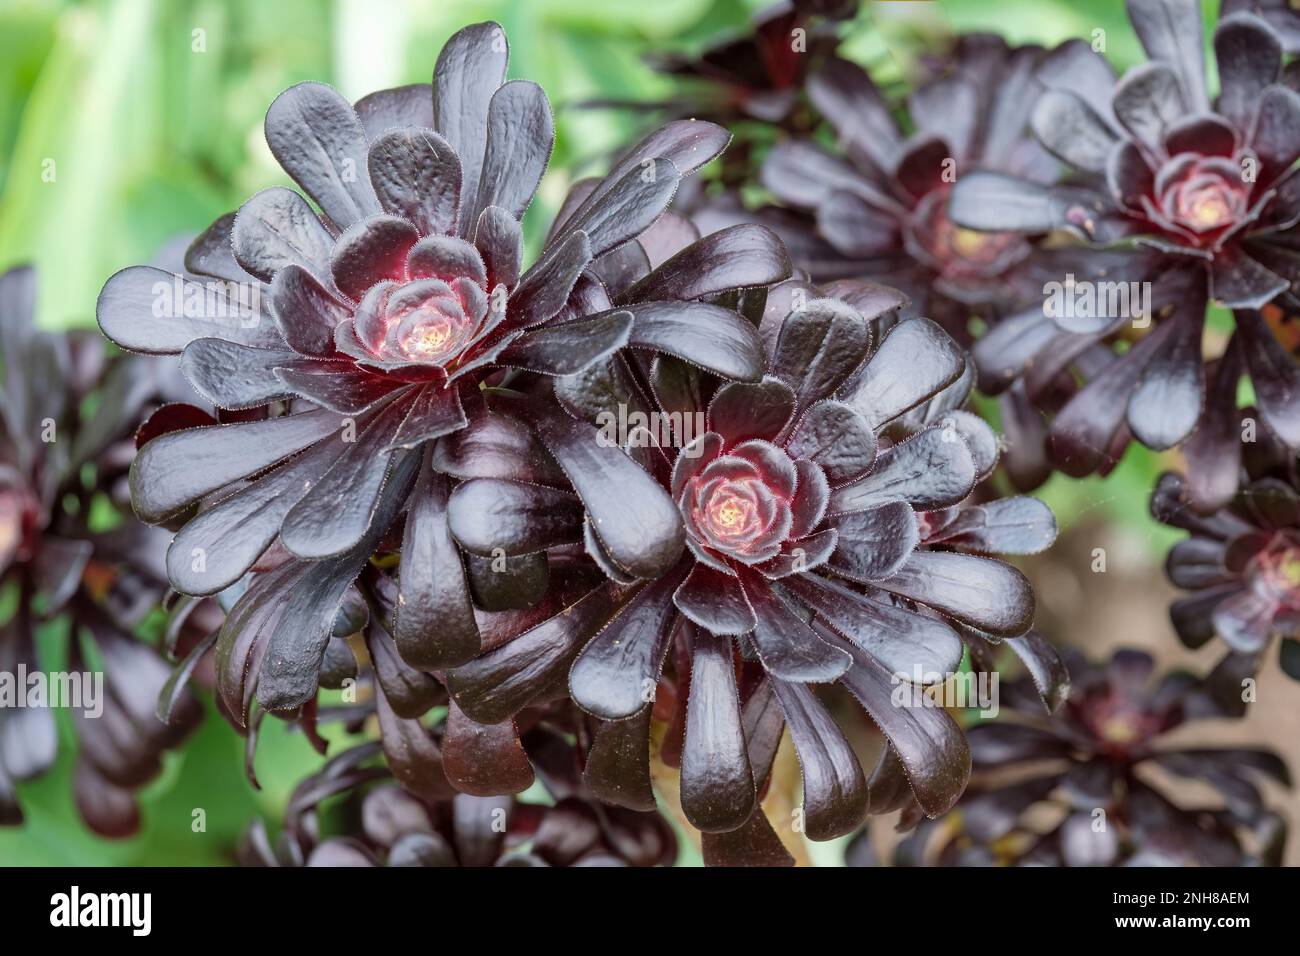 Aeonium Arboreum Atropurpureum, violette Rose, saftig mit dunkelrötlich-violetten Blättern Stockfoto